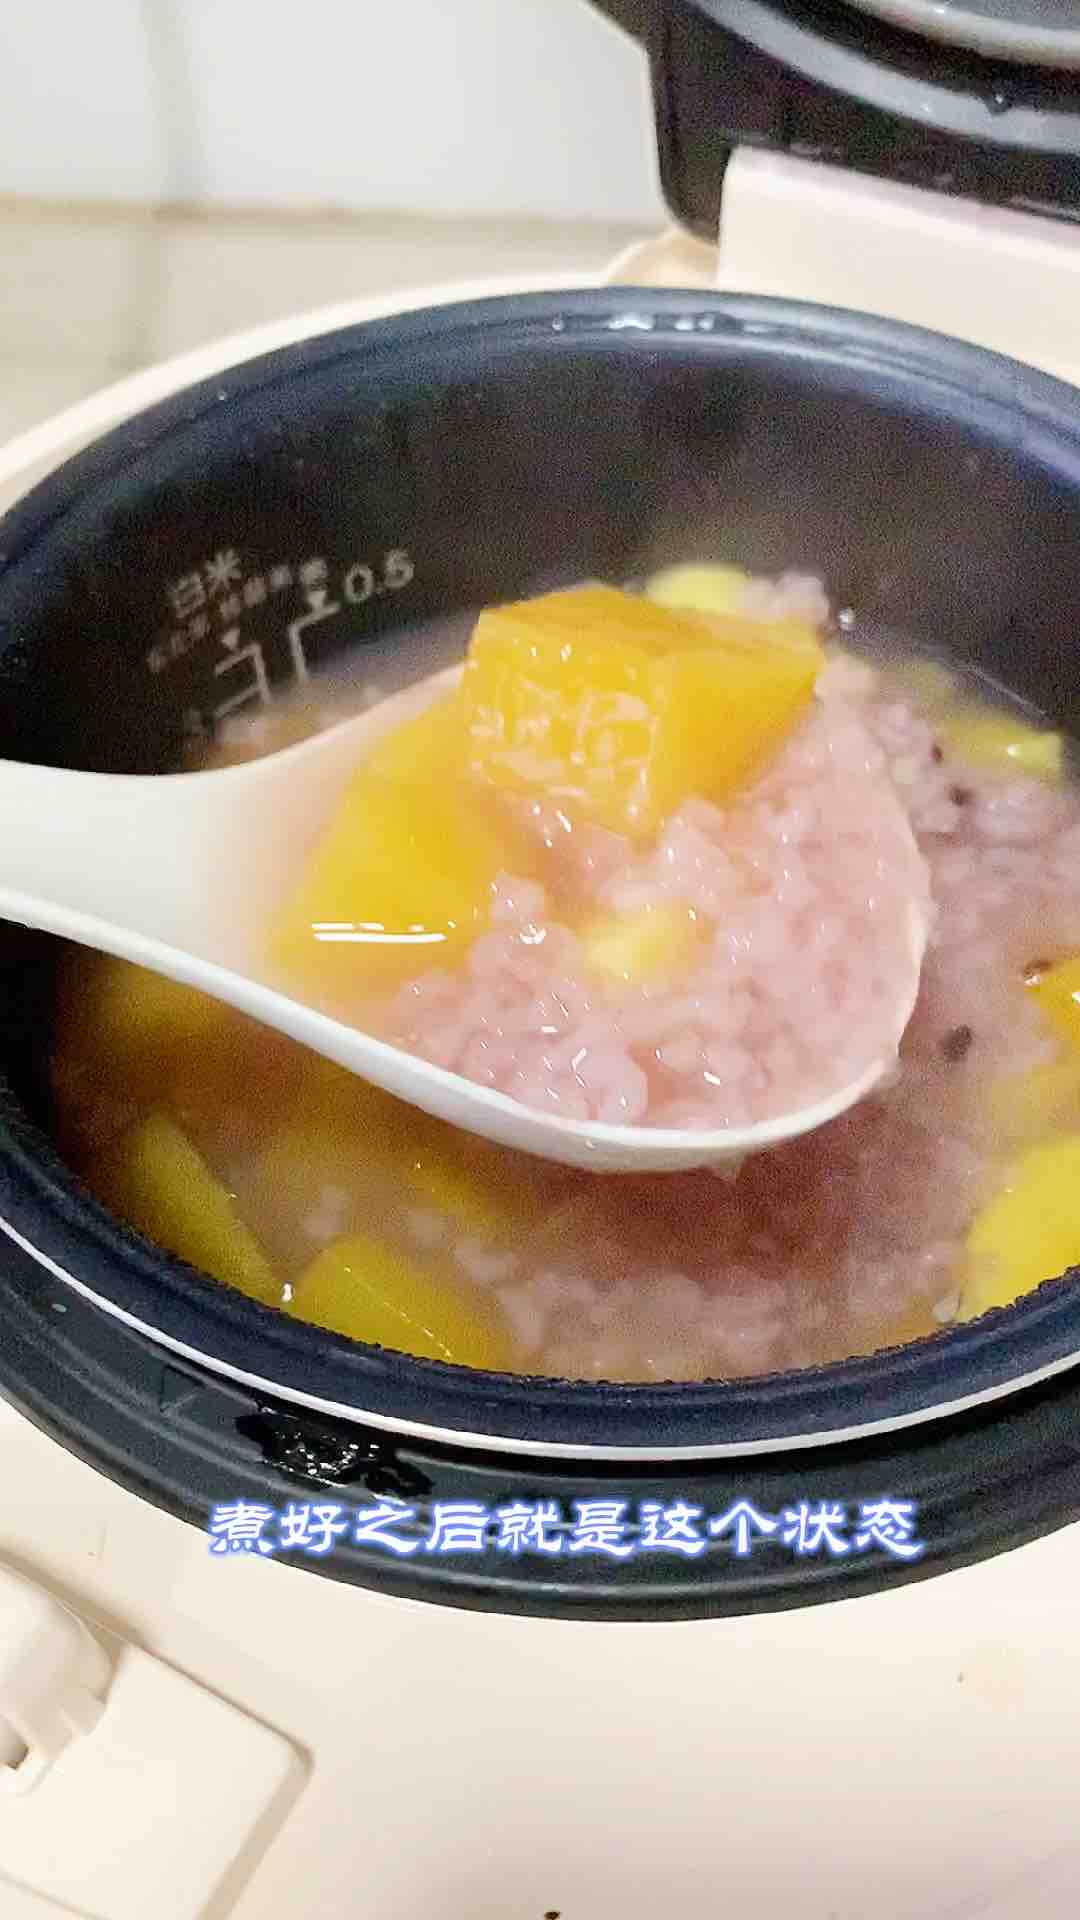 Porridge recipe